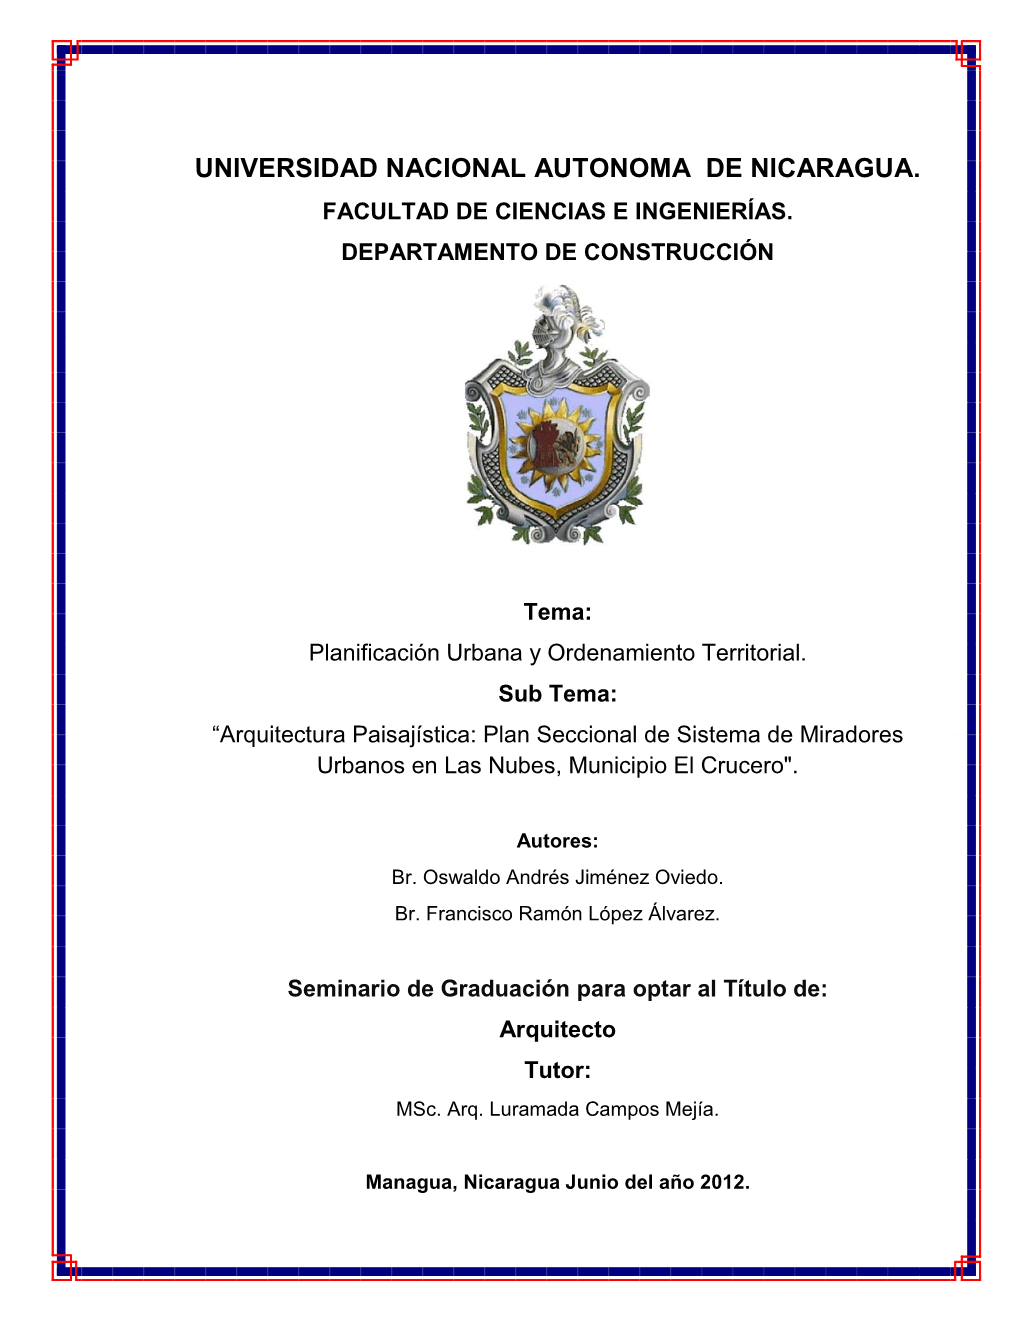 Universidad Nacional Autonoma De Nicaragua. Facultad De Ciencias E Ingenierías